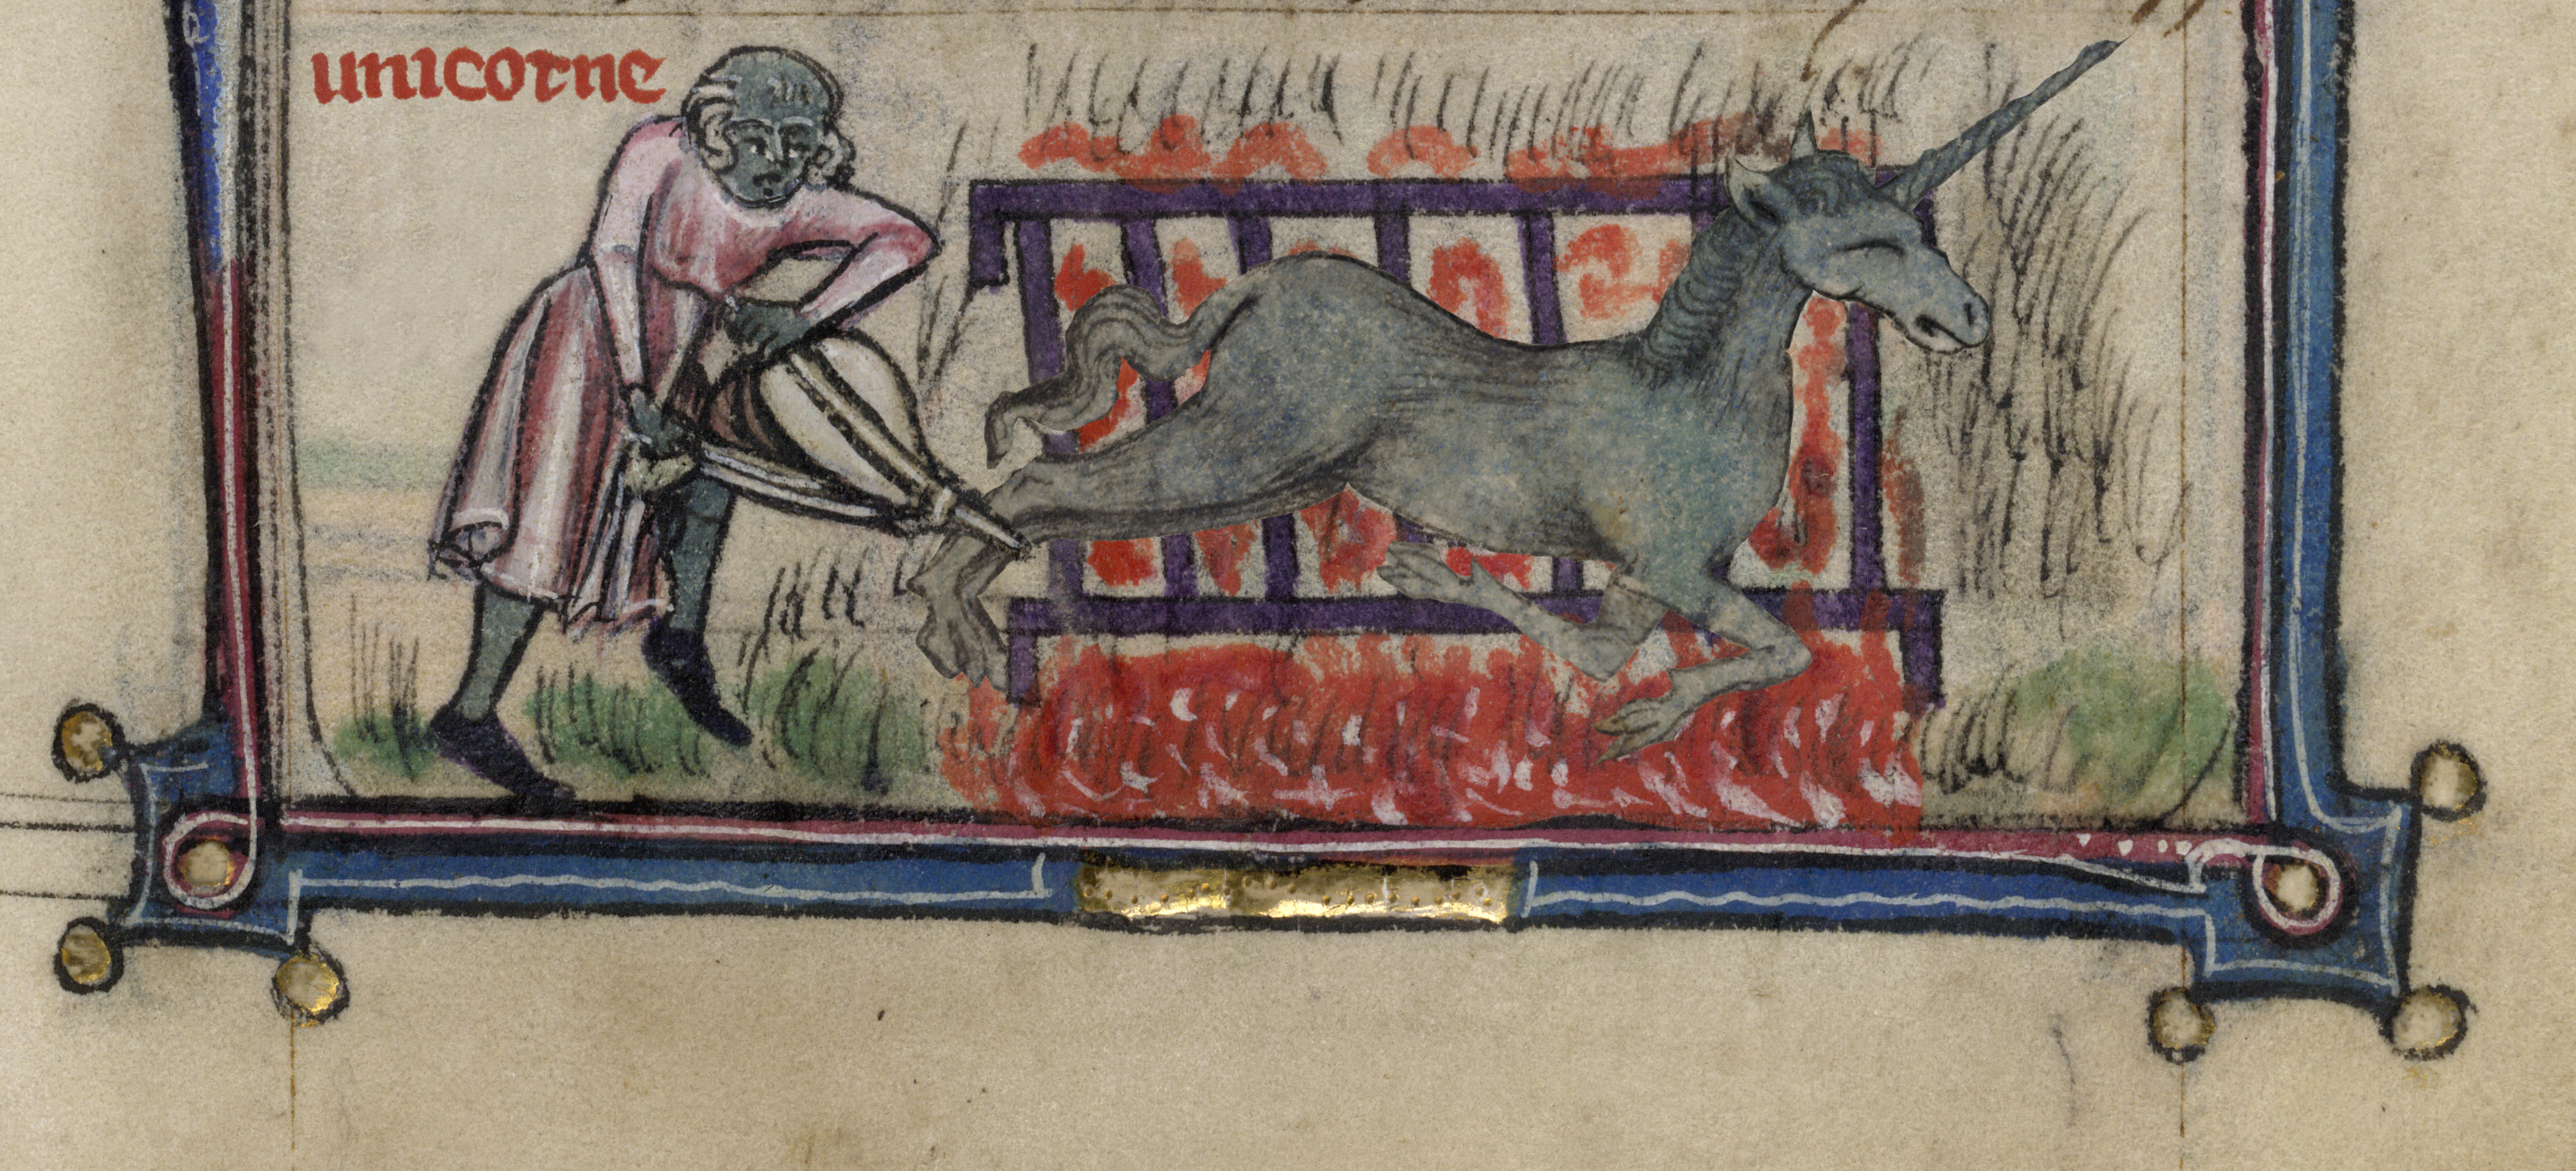 Unicorns Medieval Manuscript